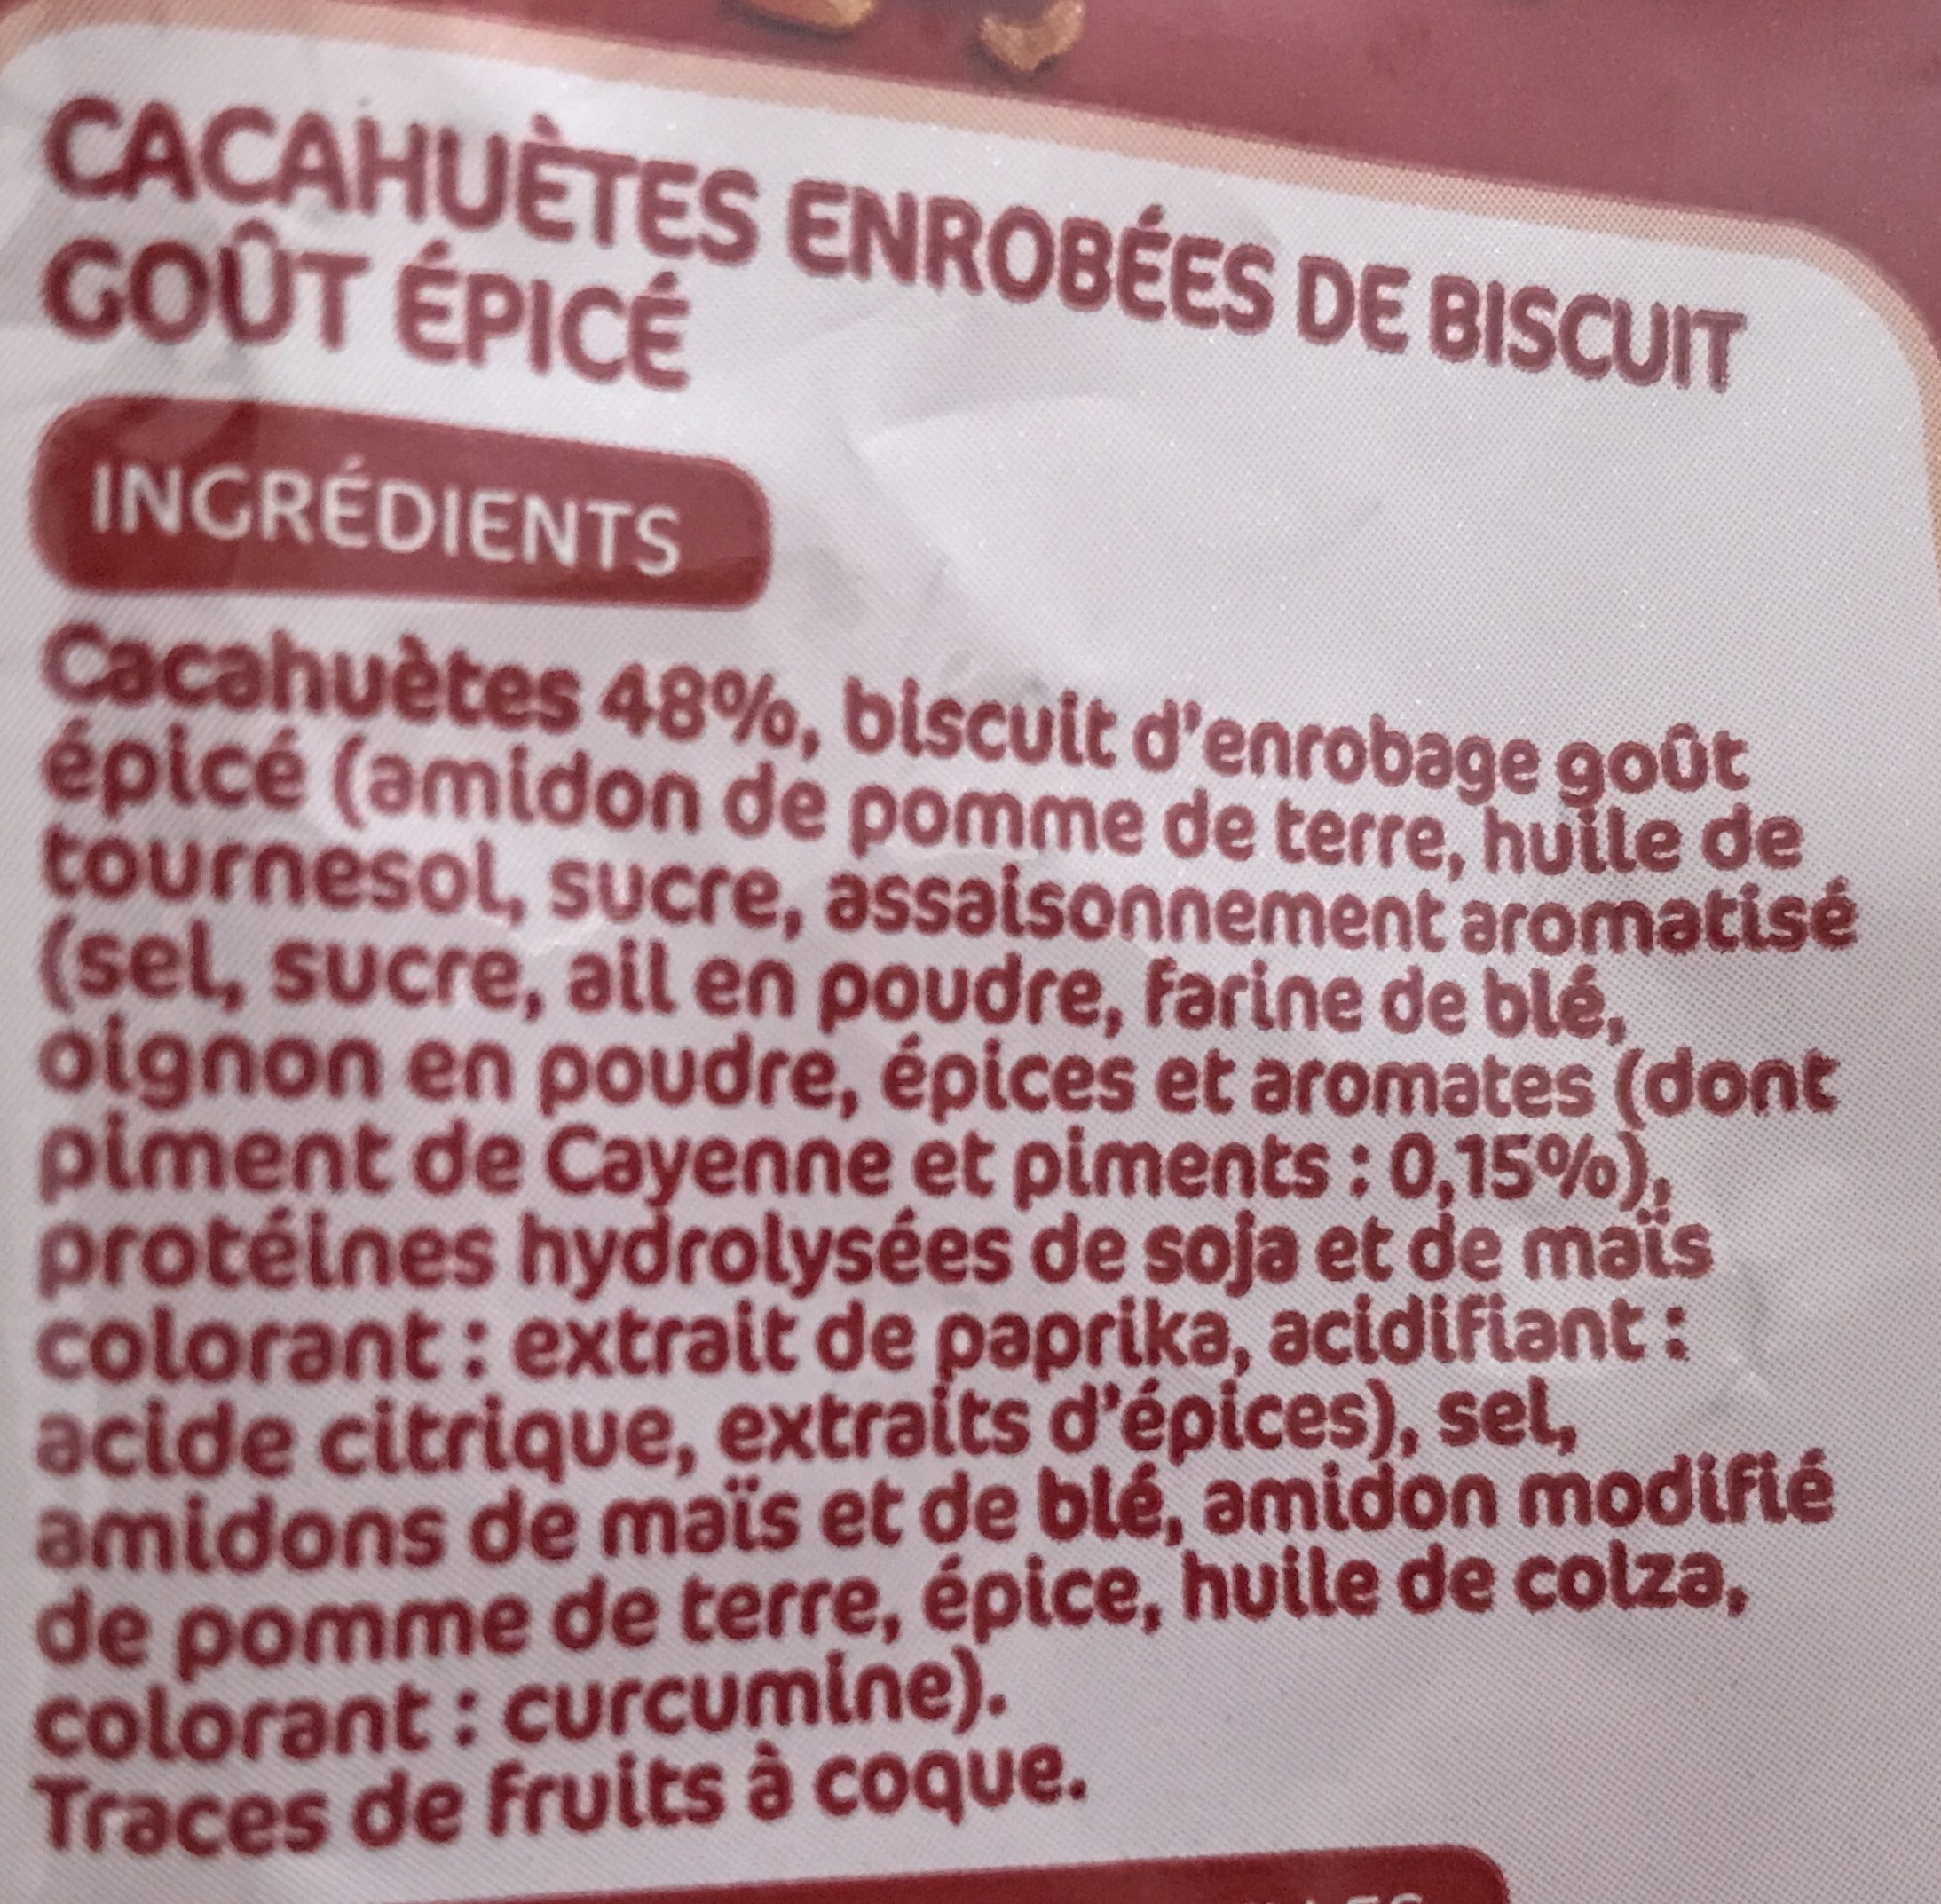 Cacahuètes enrobées goût épicé - Ingredients - fr